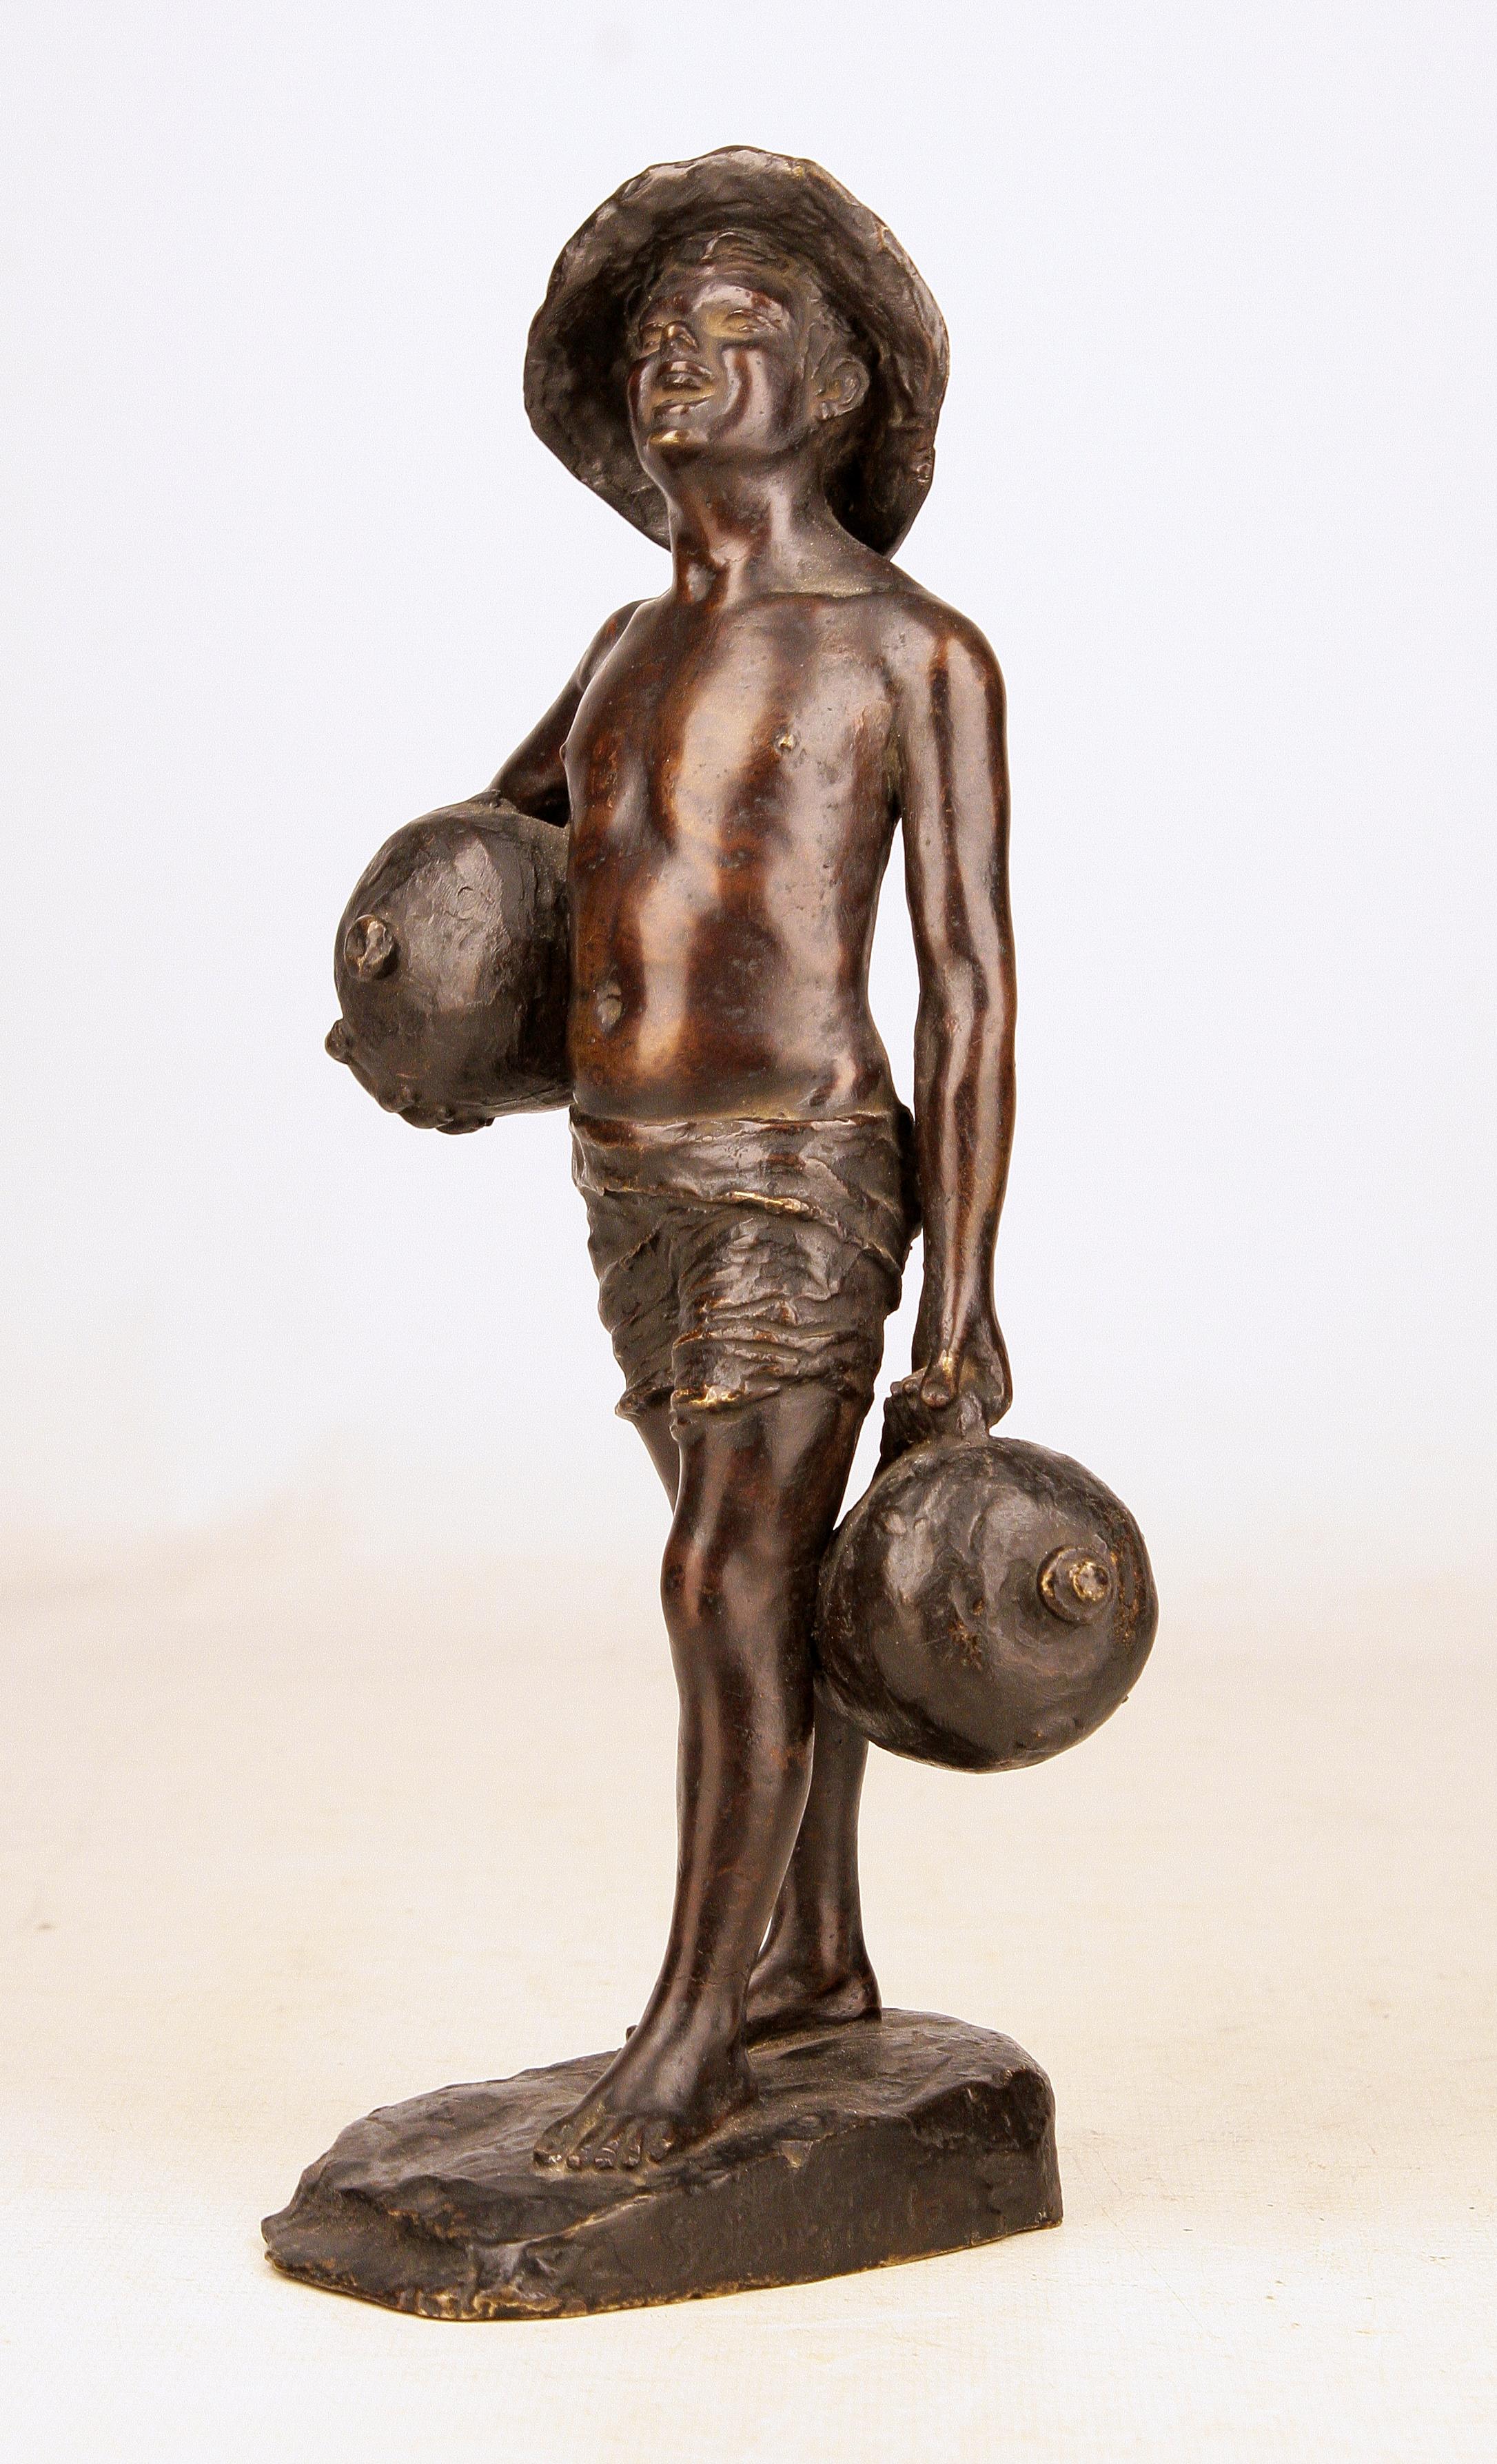 Sculpture en bronze patiné représentant un garçon tenant des cruches, signée par l'Italien G. Borriello

Par : G. Borriello
MATERIAL : cuivre, bronze, métal
Technique : fonte, moulage, patinage, travail du métal
Dimensions : 5 po x 6 po x 11 po
Date